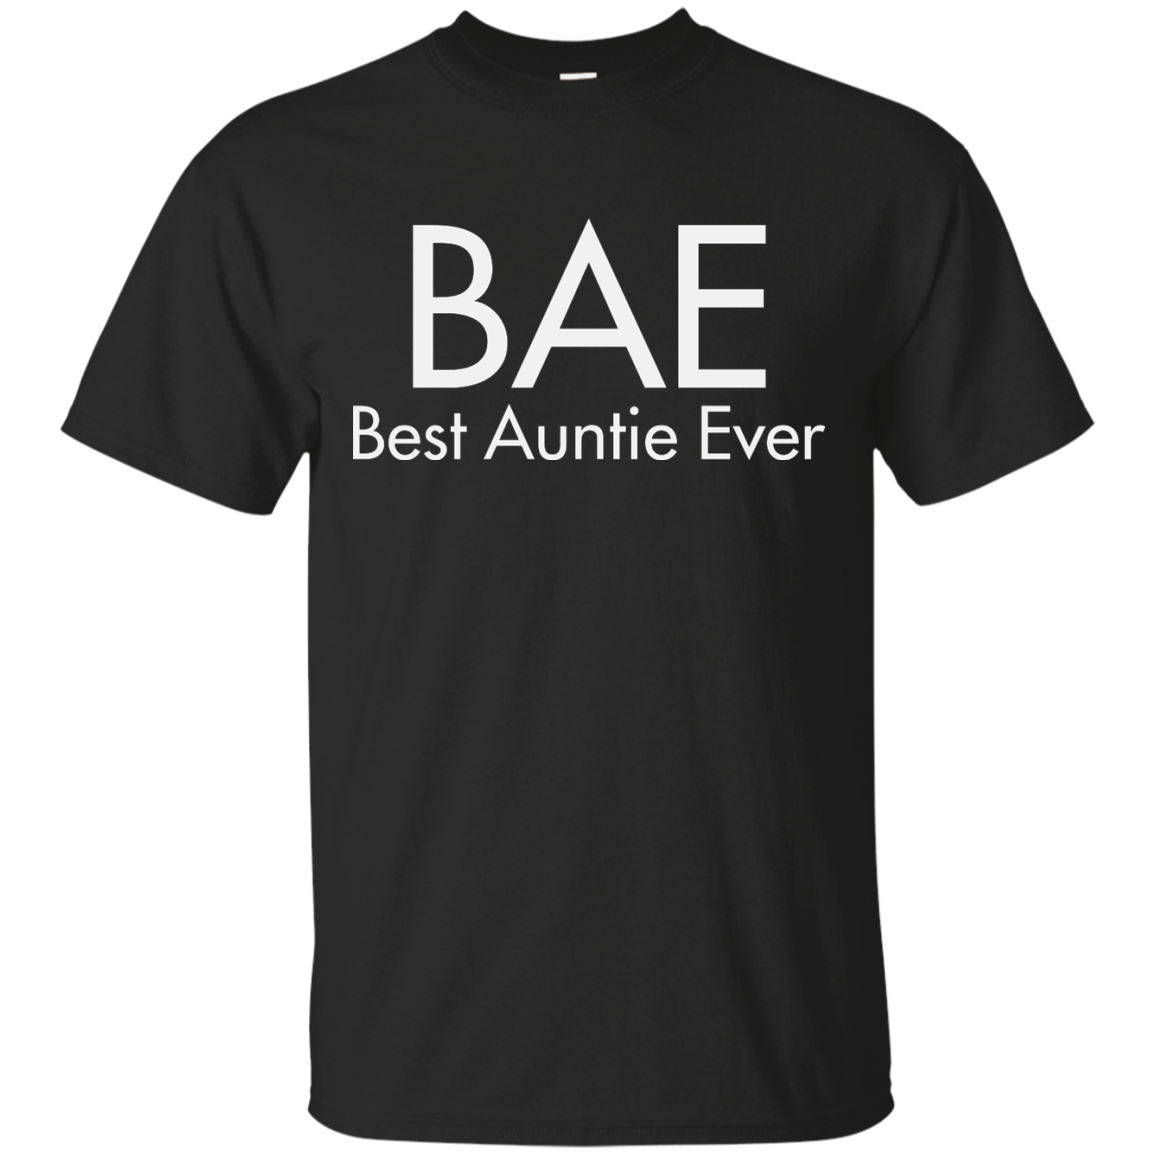 BAE-Best Auntie Ever shirt, tank top, hoodie